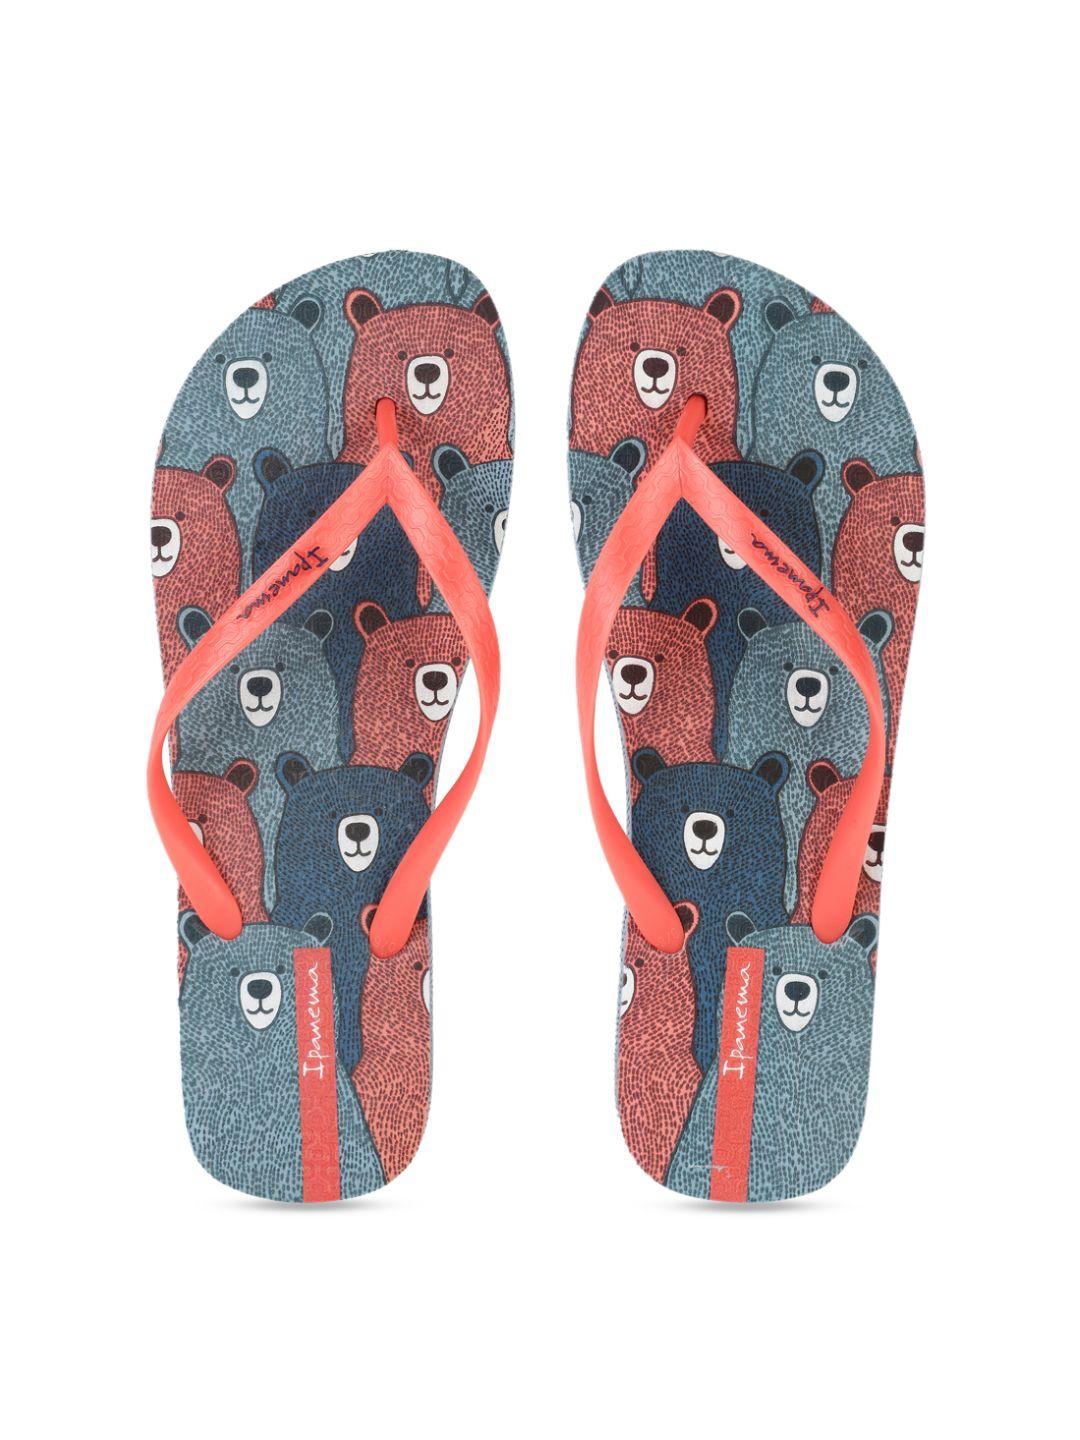 ipanema women coral orange & navy blue printed thong flip-flops